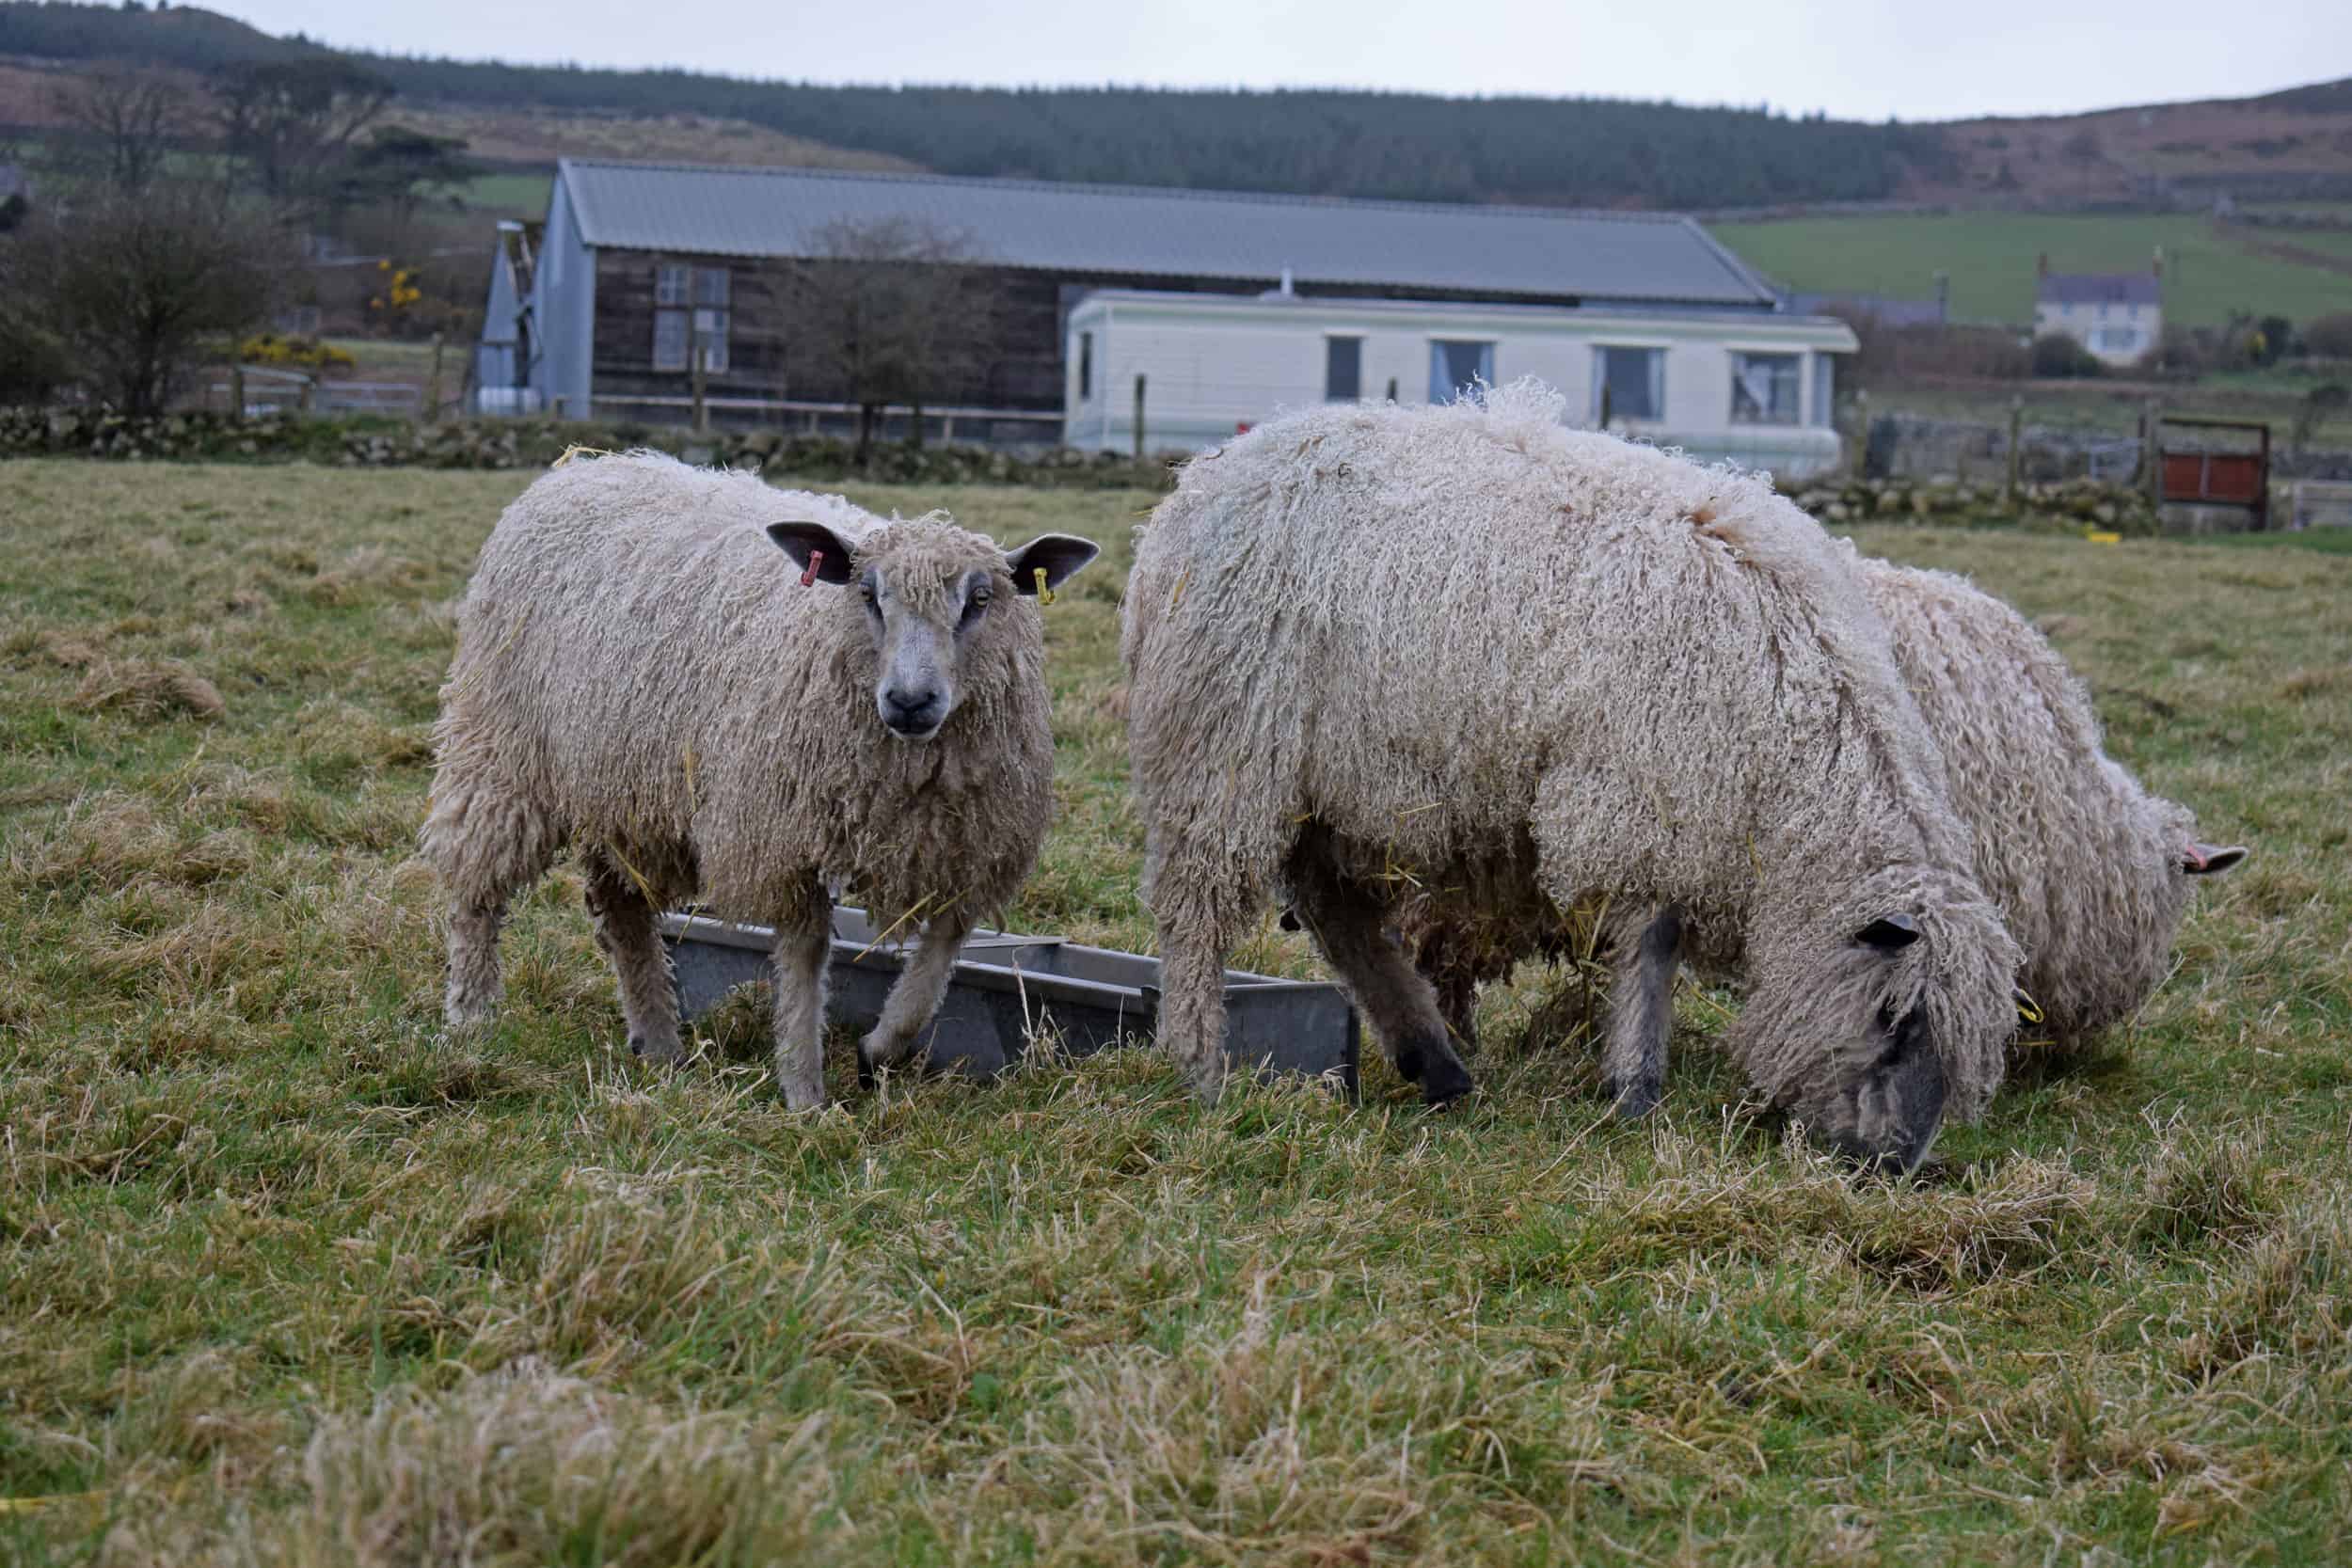 hermione texel x wensleydale patchwork sheep wool north wales